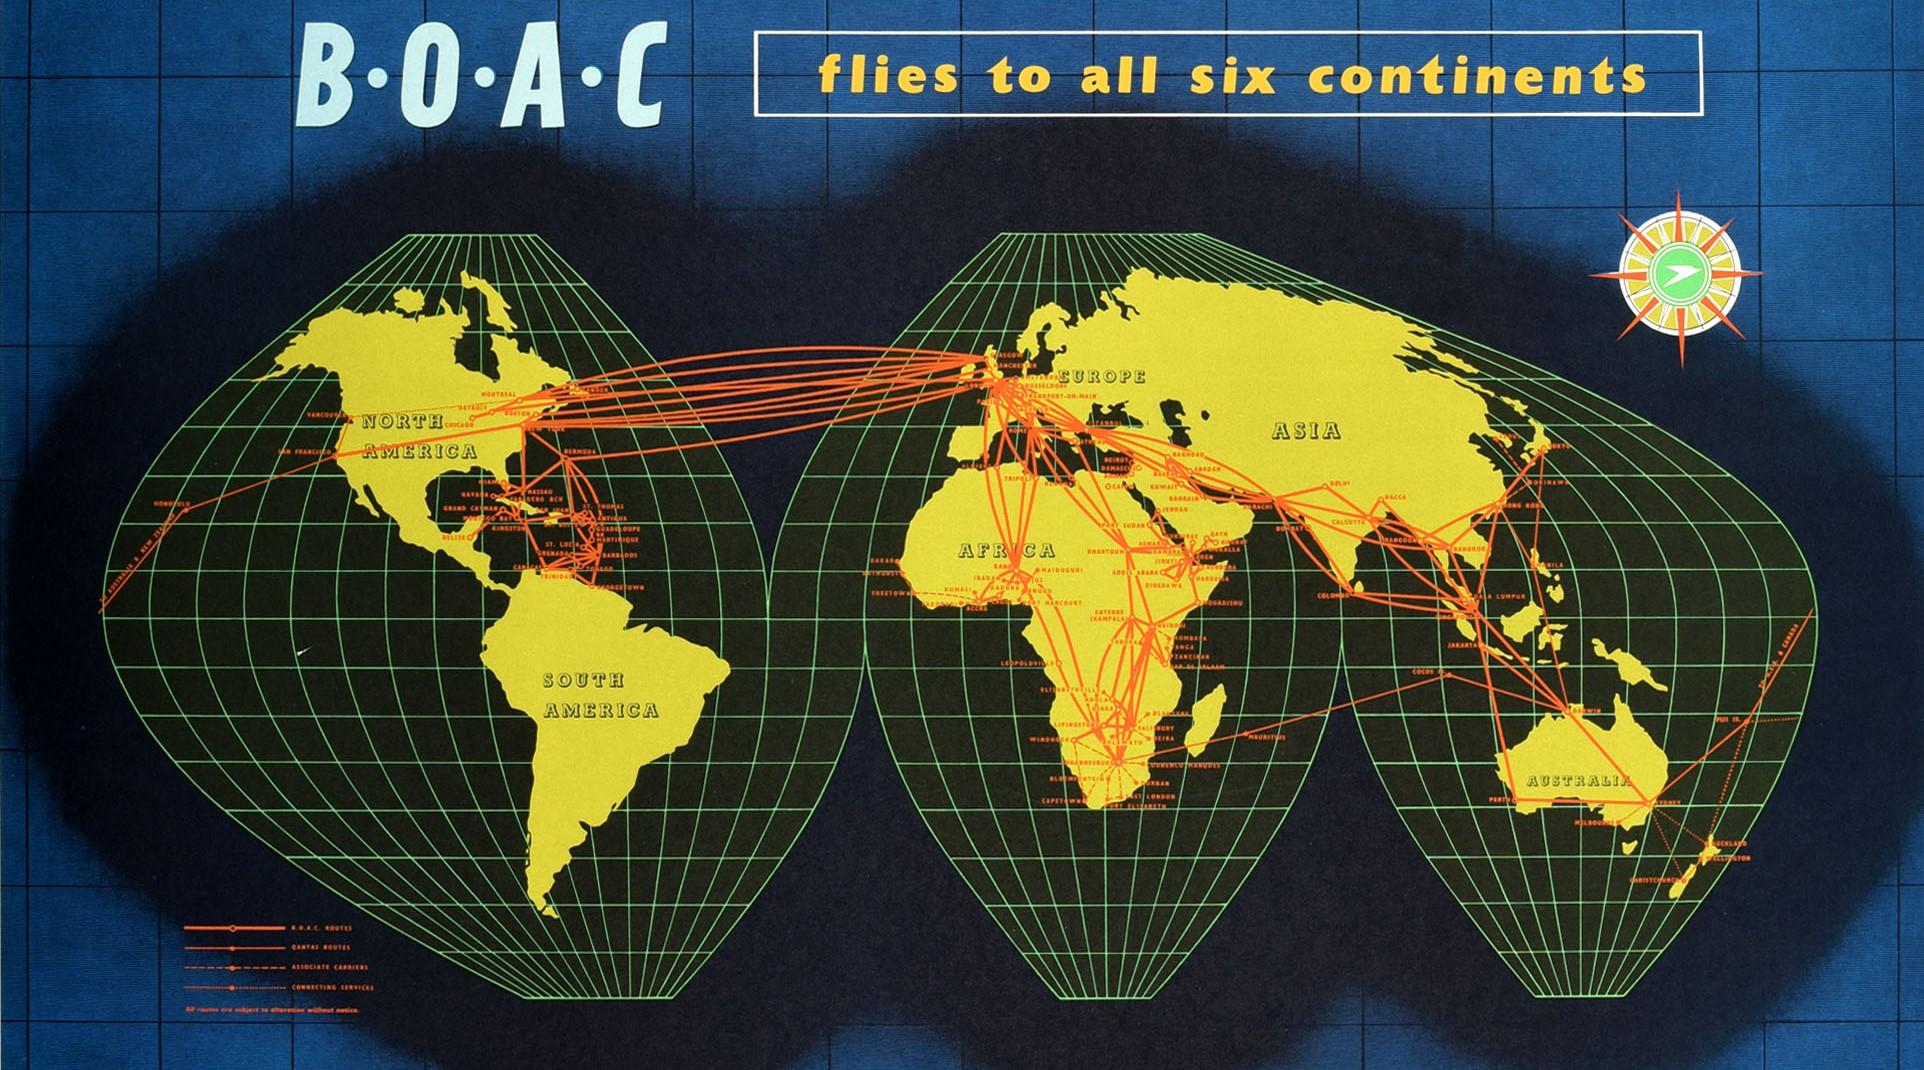 Original-Reisewerbeplakat der British Overseas Airways Corporation - BOAC Flies To All Six Continents - mit einer Weltkarte auf dunkelblauem Hintergrund mit dem Speedbird-Logo in einem Kompass unter dem Titeltext und orangefarbenen Linien, die die